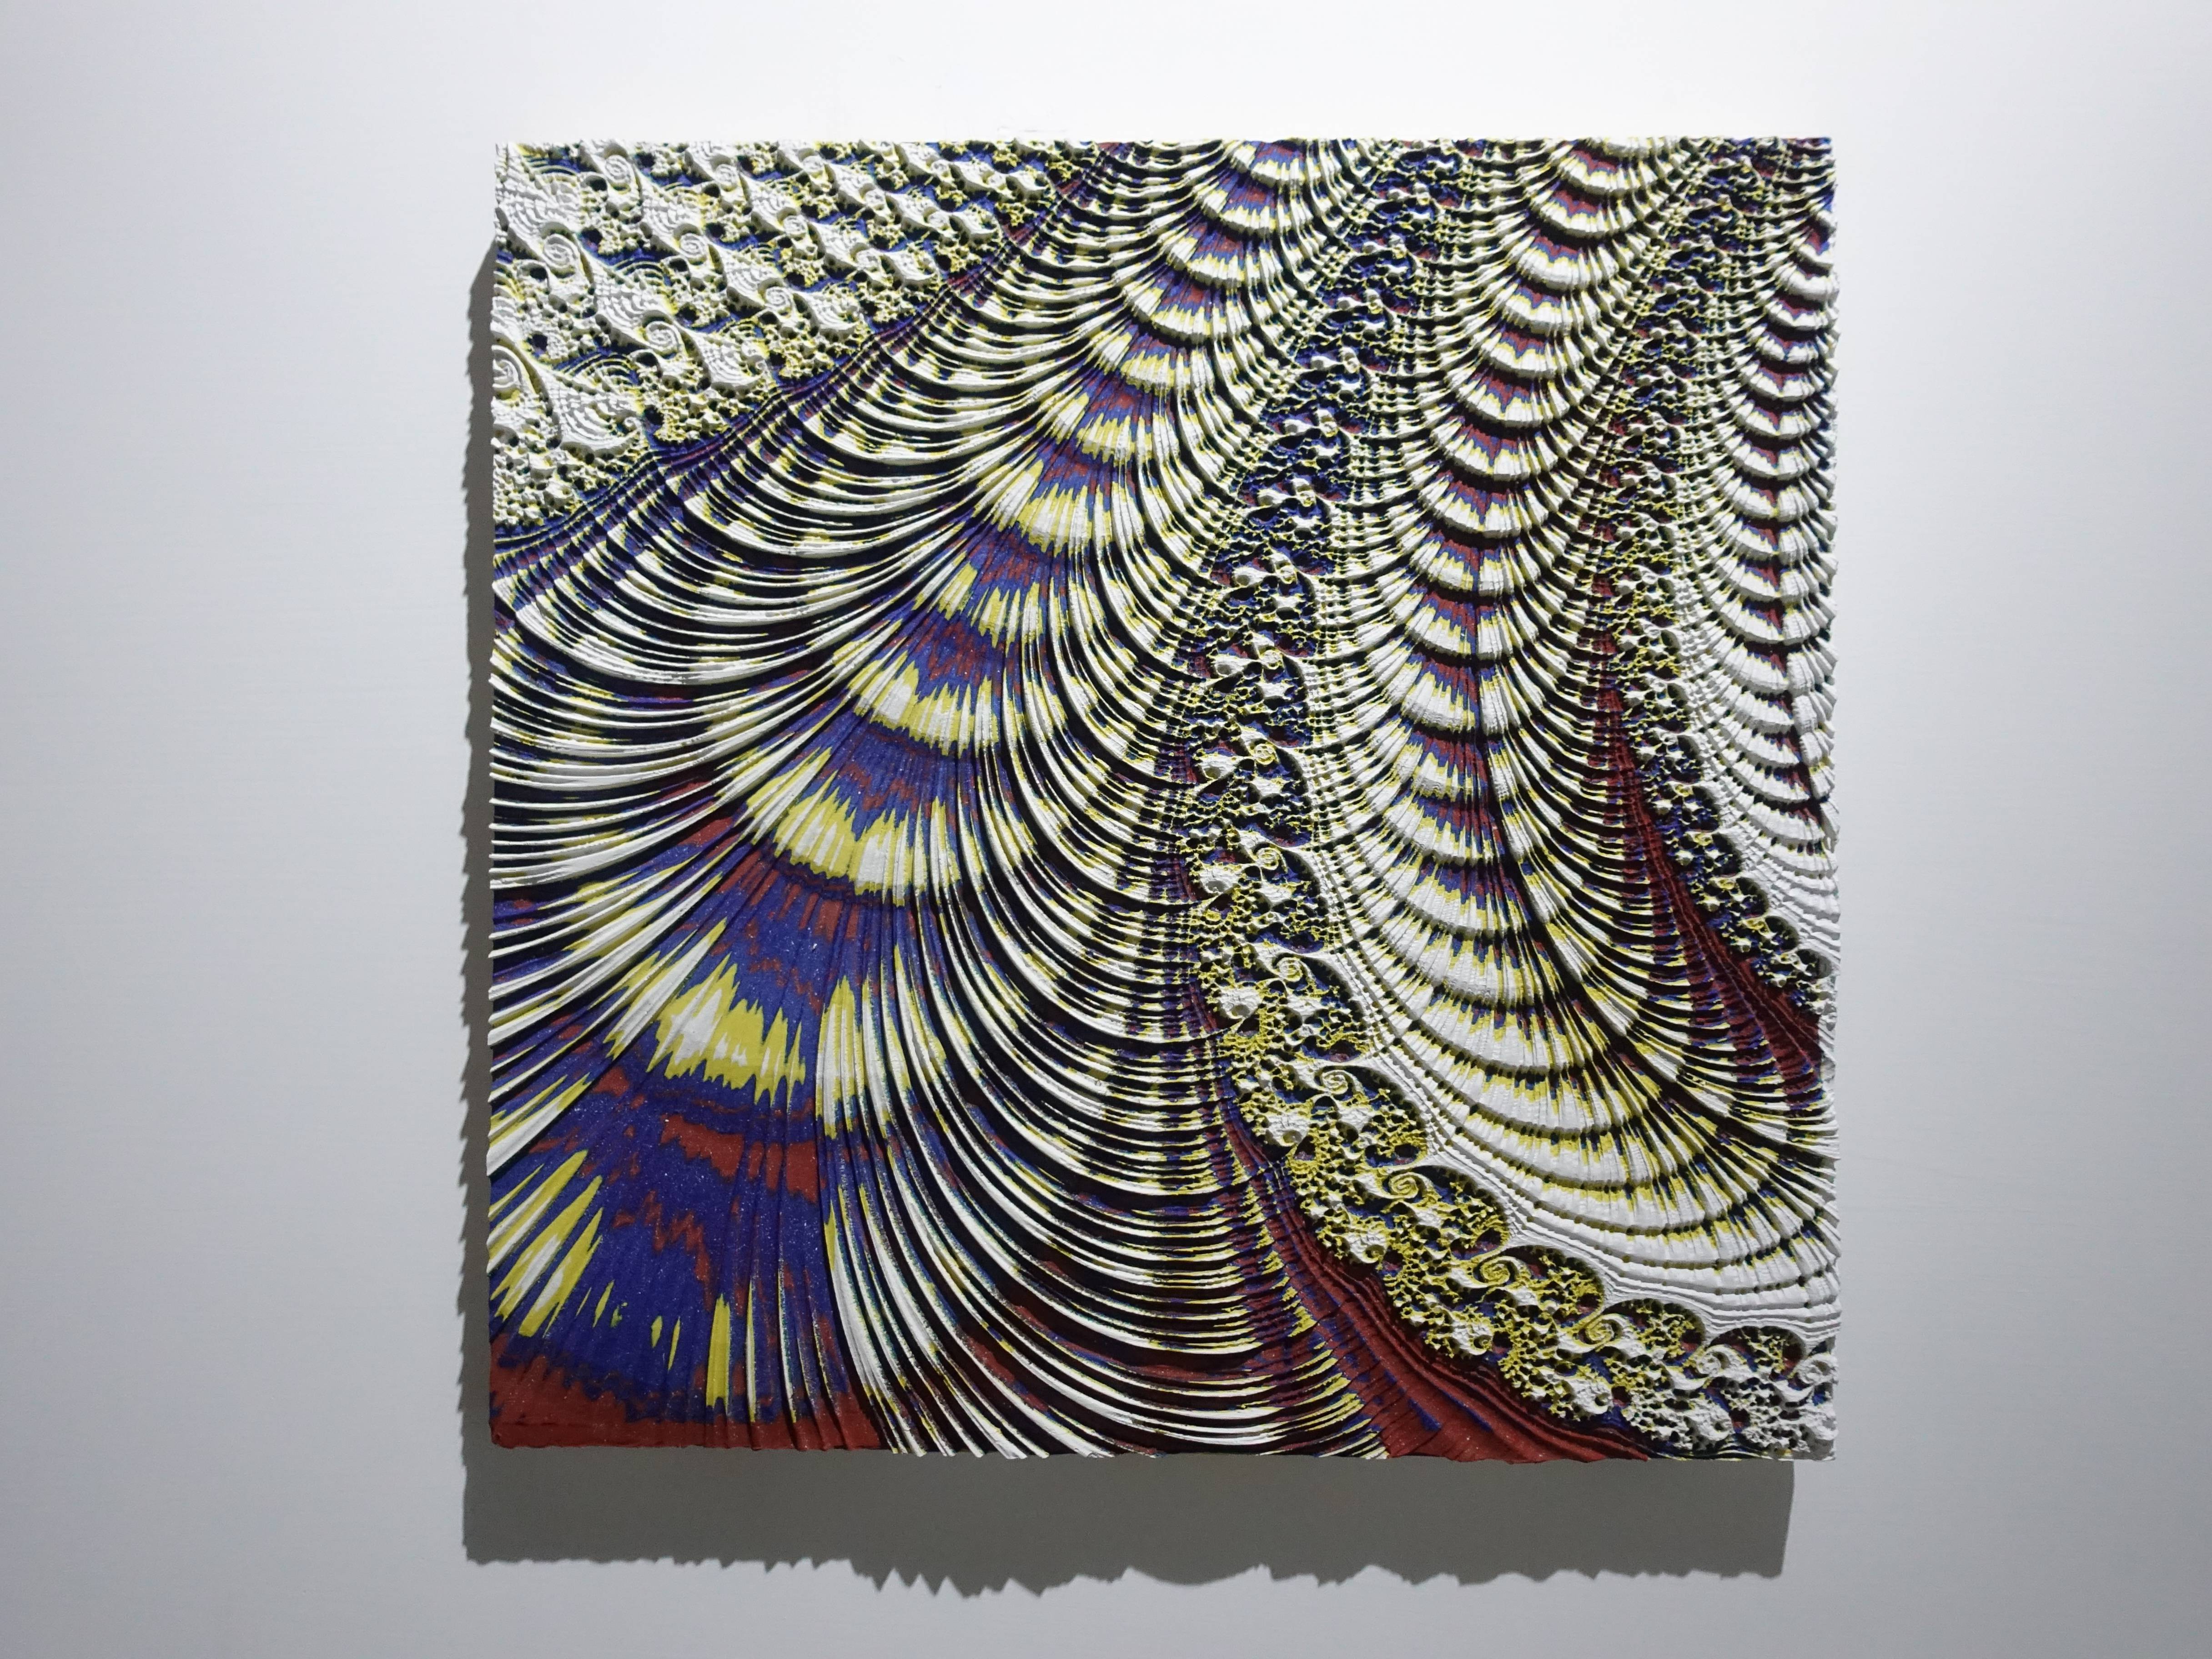 歐勁，《無題-152》，30 x 31 cm，木板、丙烯、綜合材料，2019。